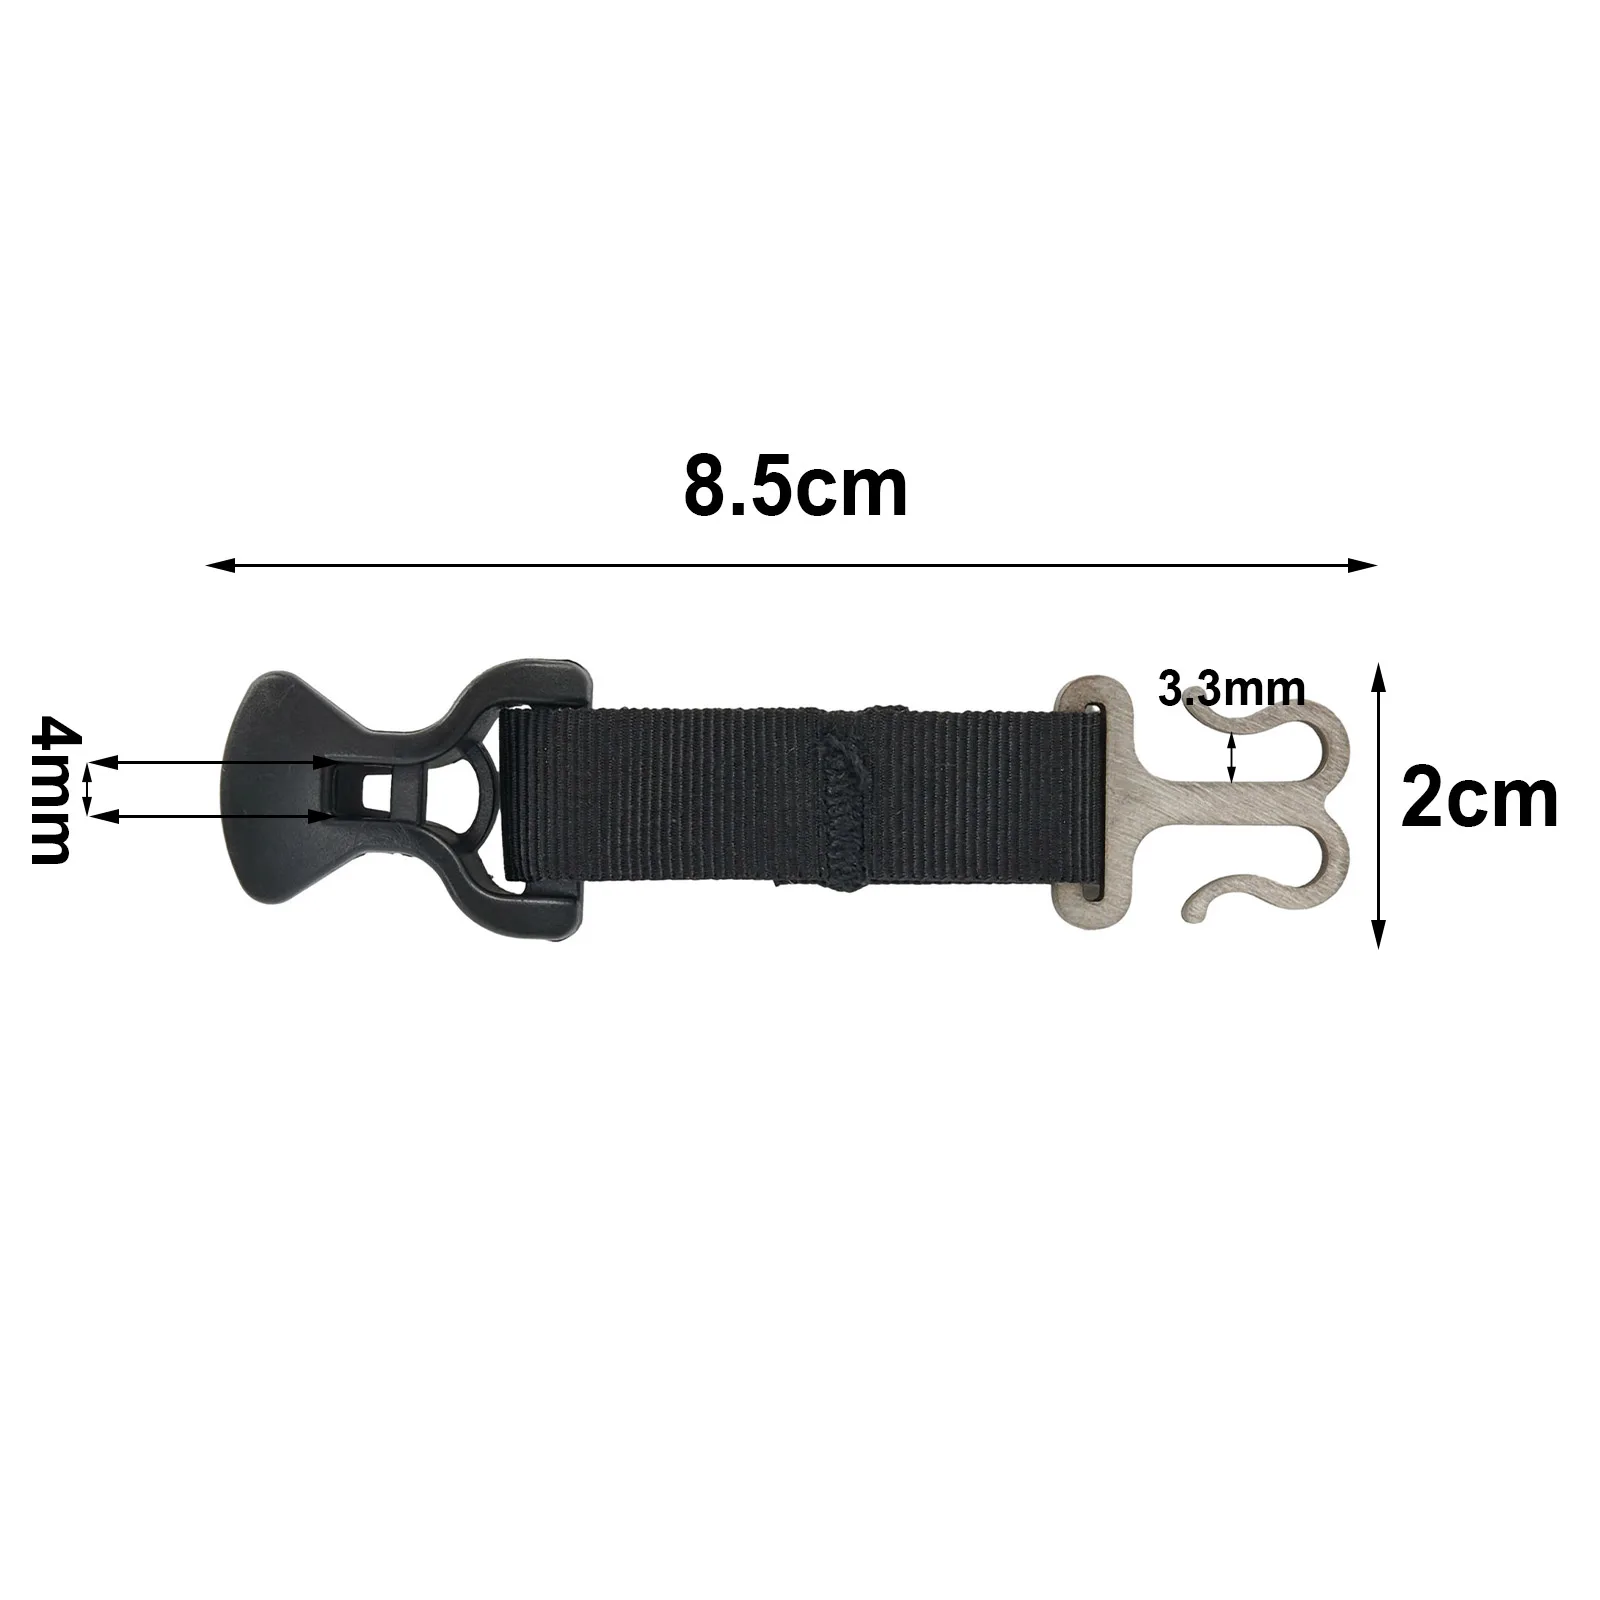 

Крючки Пряжка для палатки держатель веревки практичный в использовании около 85x20 мм соединение нейлон + нержавеющая сталь + ABS высокое качество